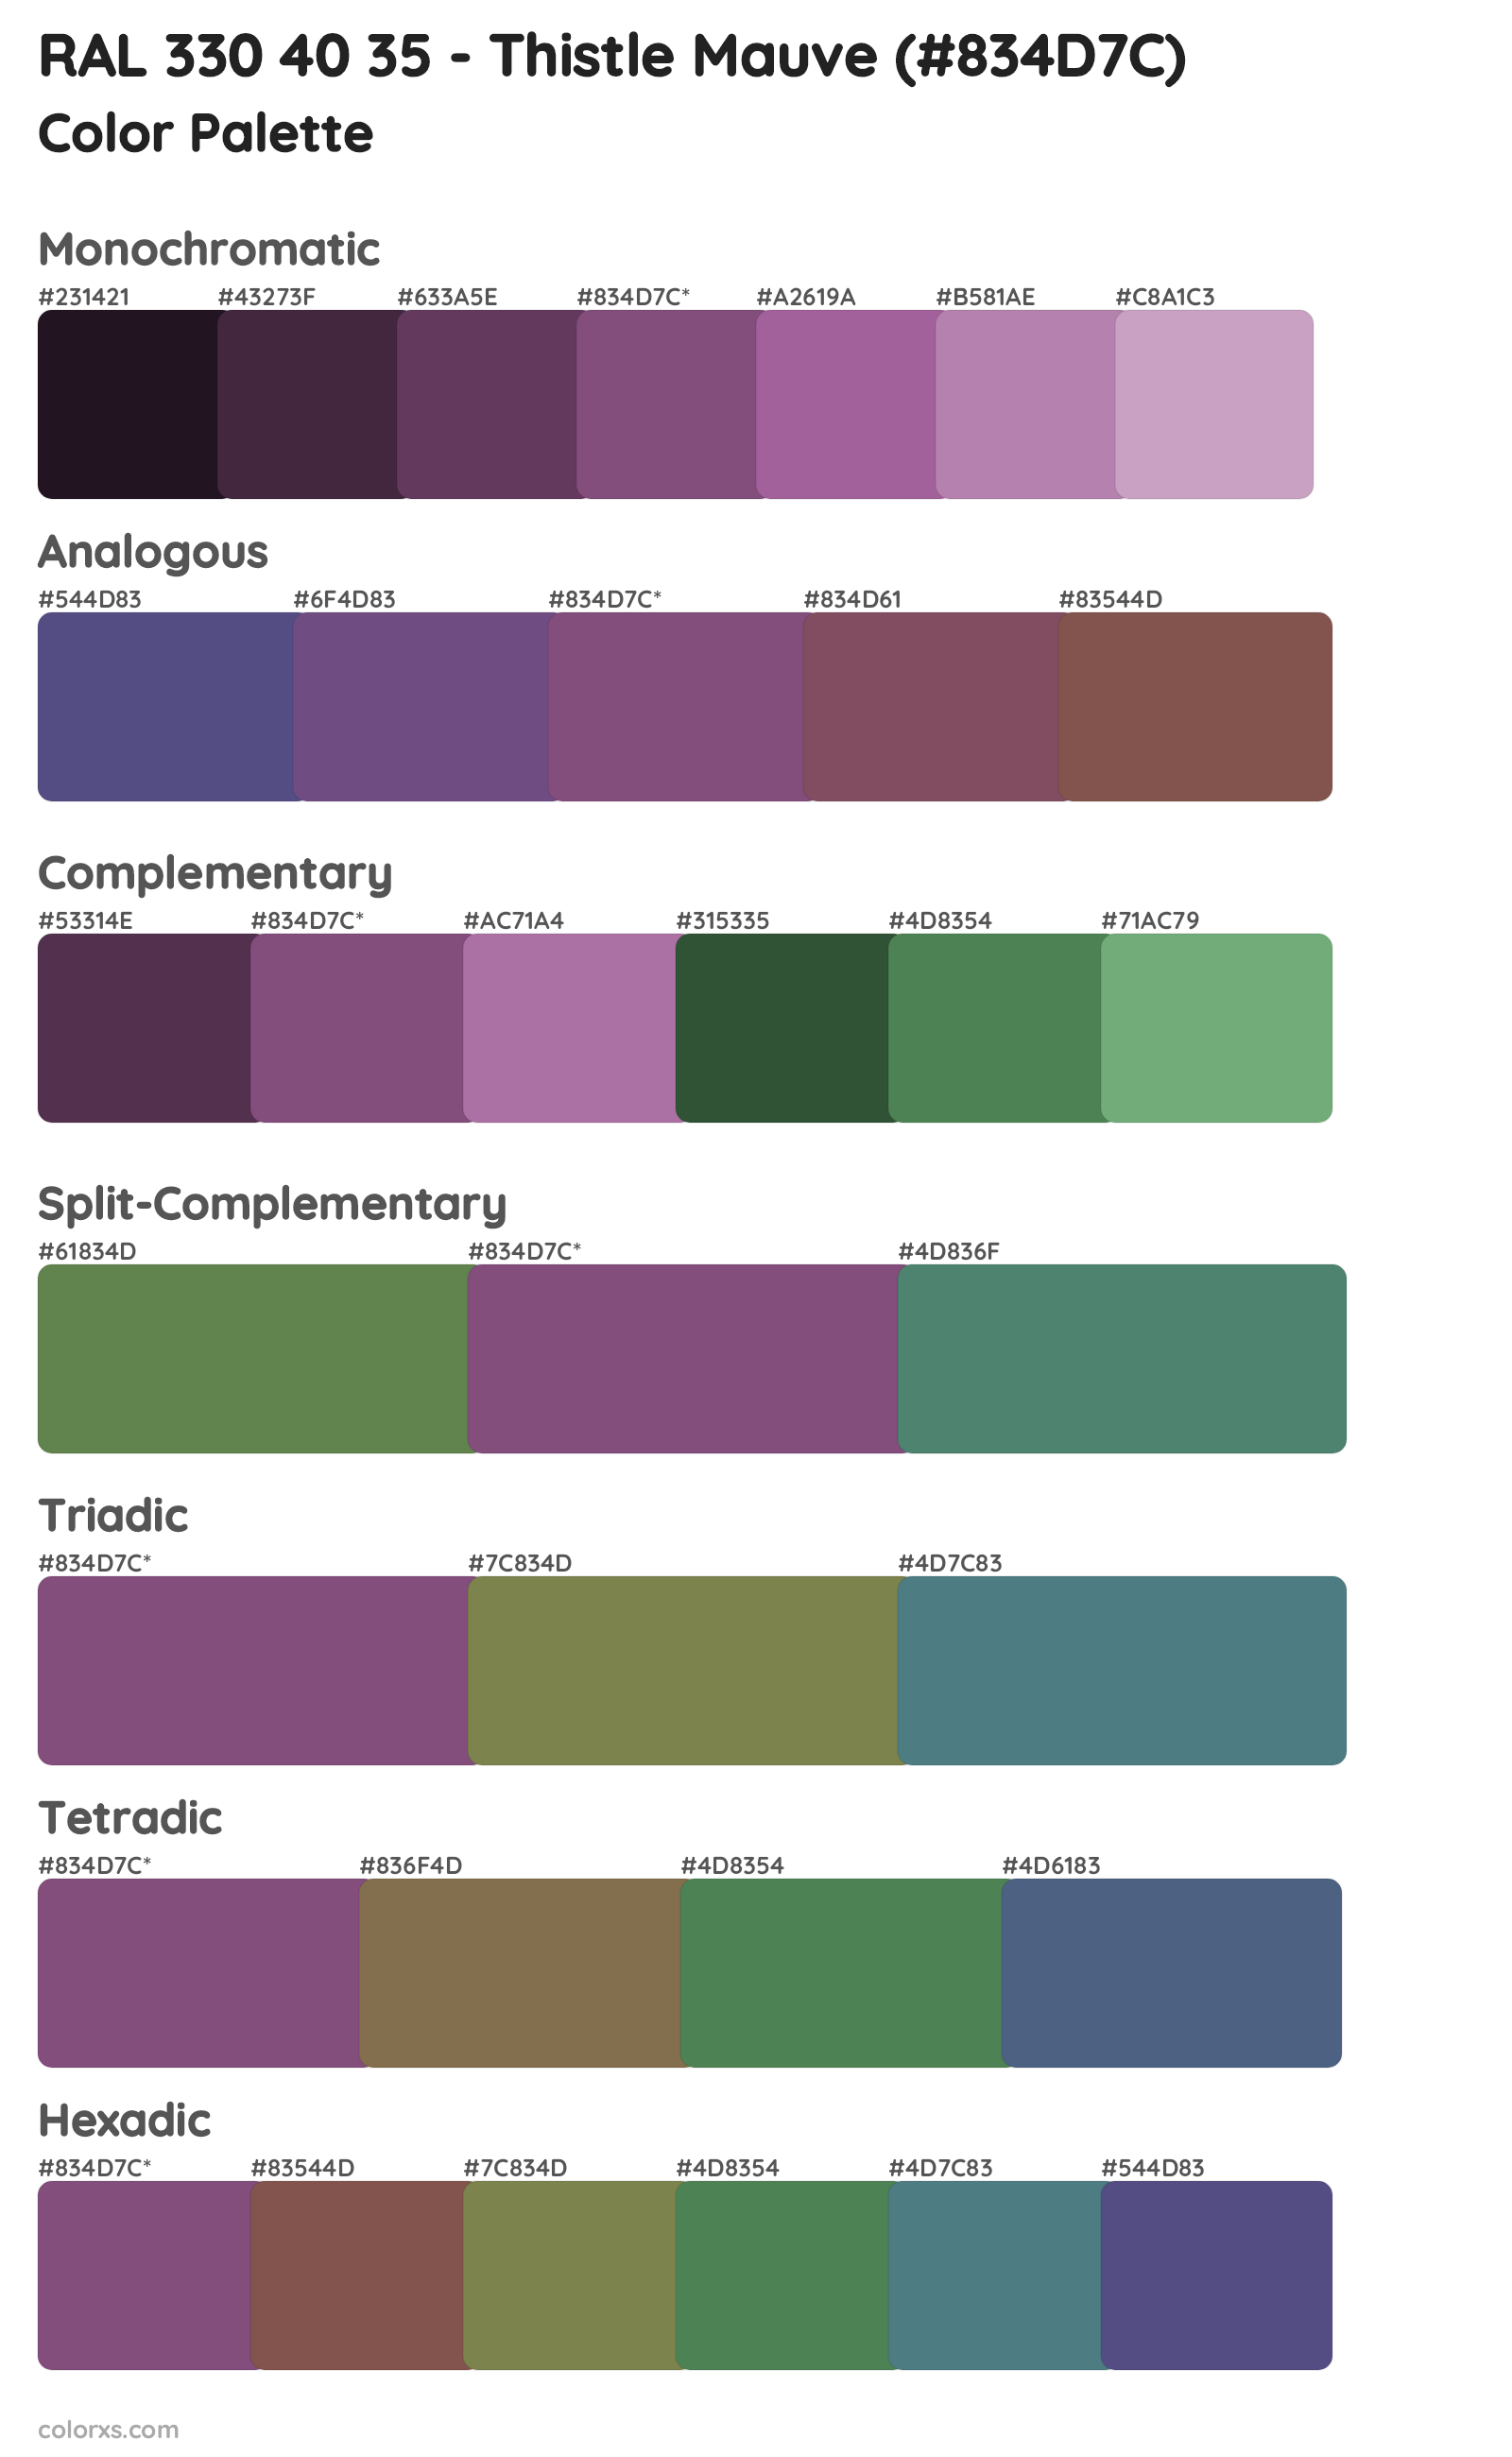 RAL 330 40 35 - Thistle Mauve Color Scheme Palettes